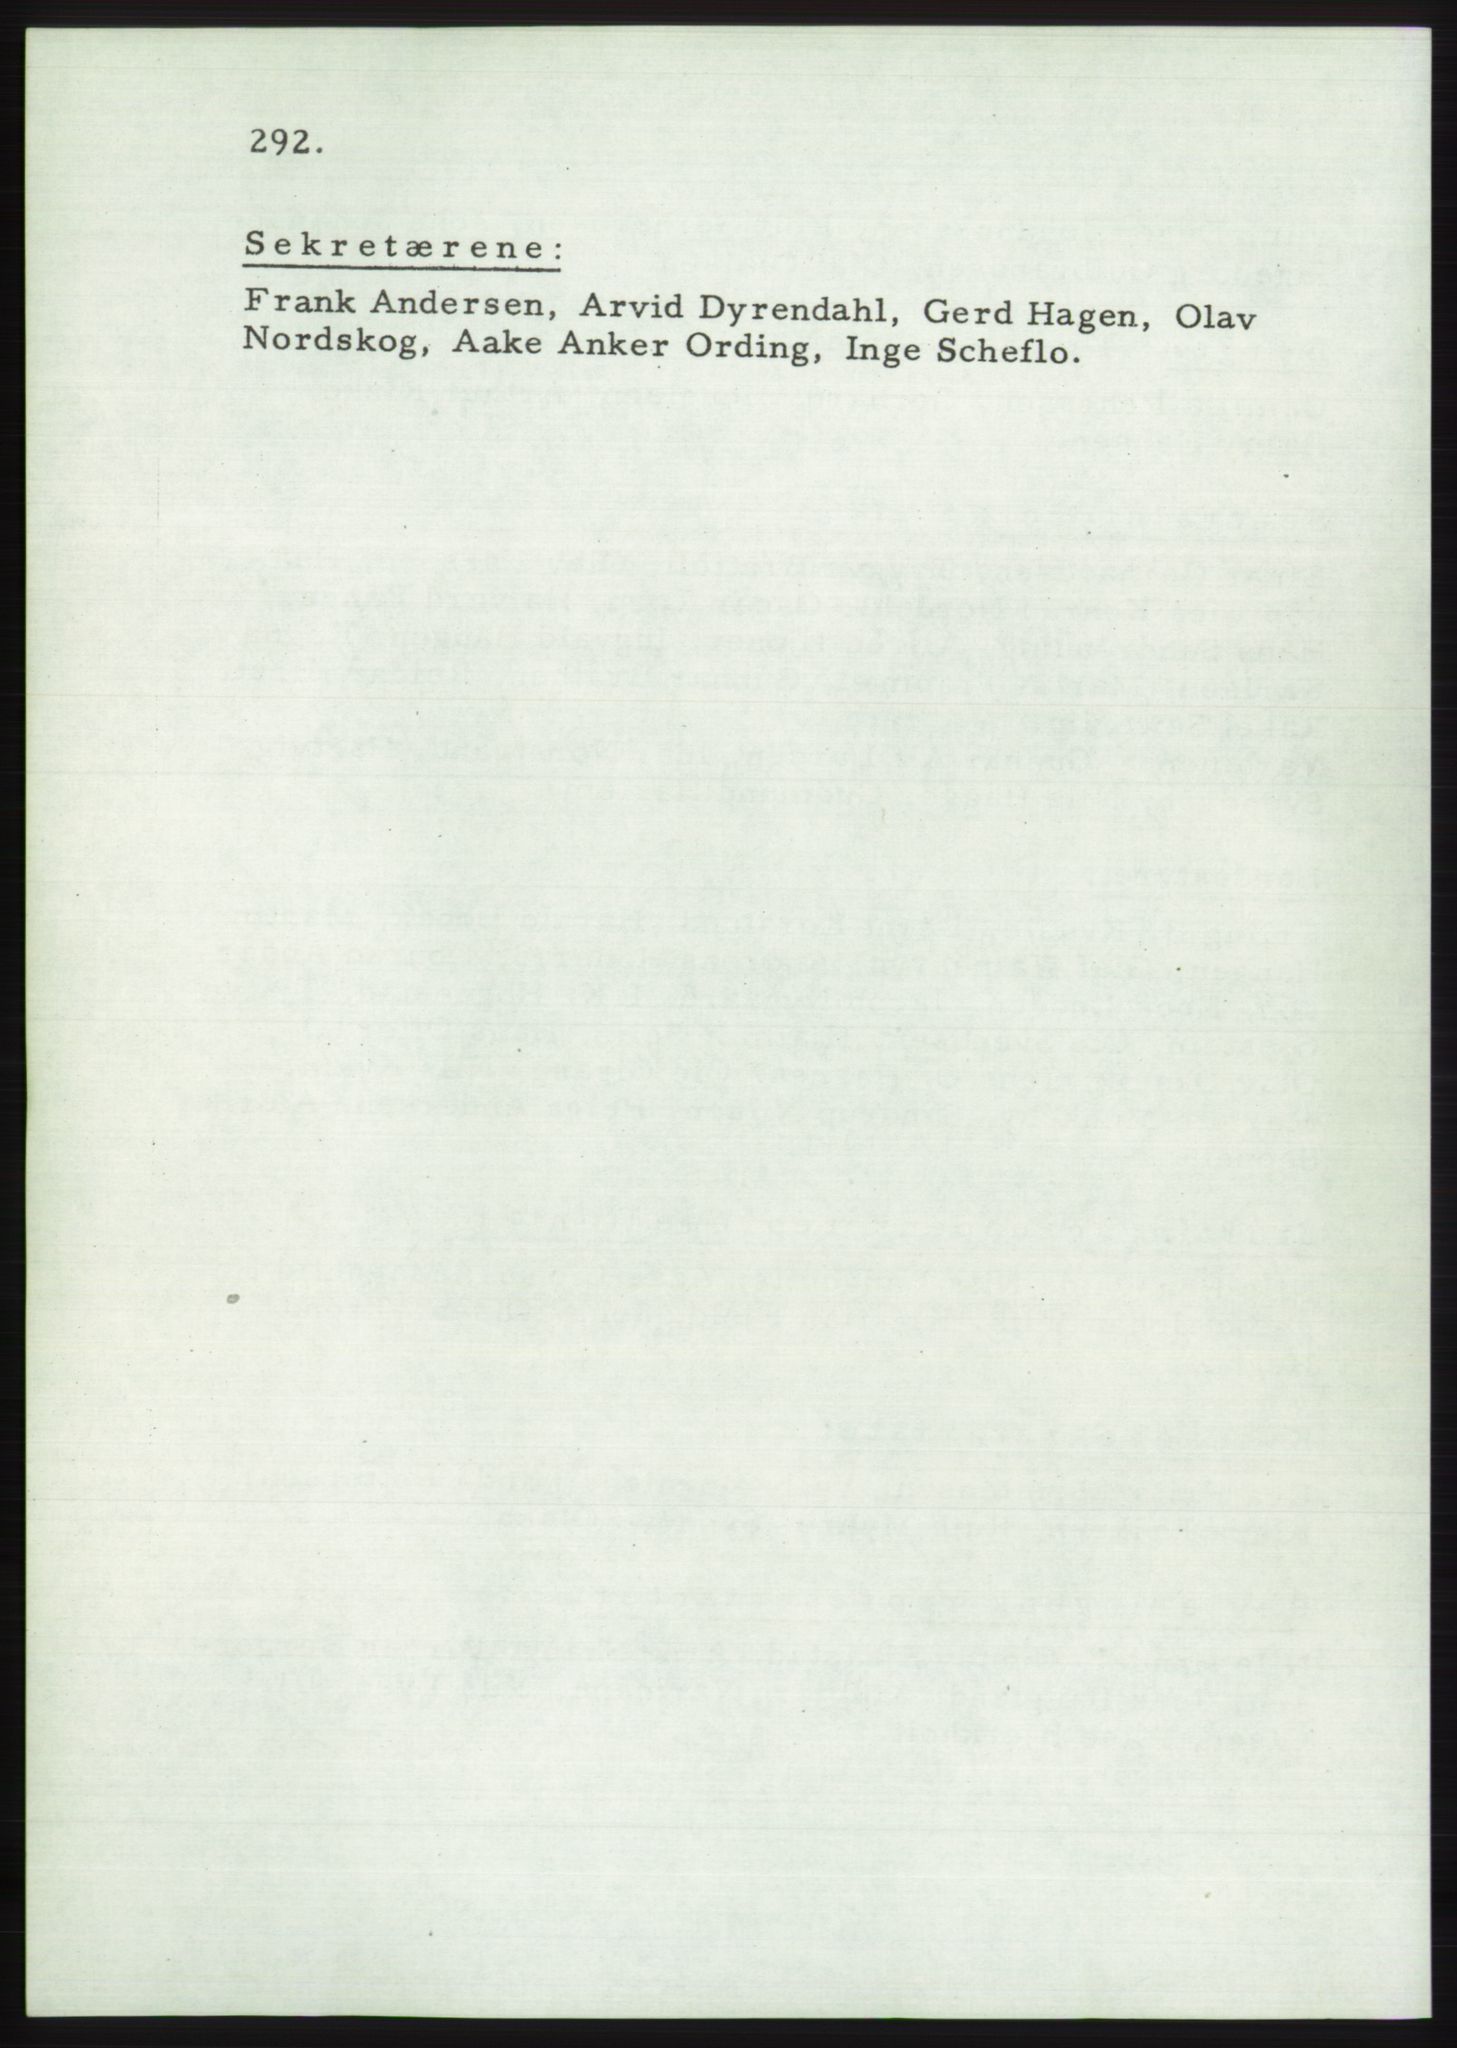 Det norske Arbeiderparti - publikasjoner, AAB/-/-/-: Protokoll over forhandlingene på det 36. ordinære landsmøte 30.-31. mai og 1. juni 1957 i Oslo, 1957, s. 292